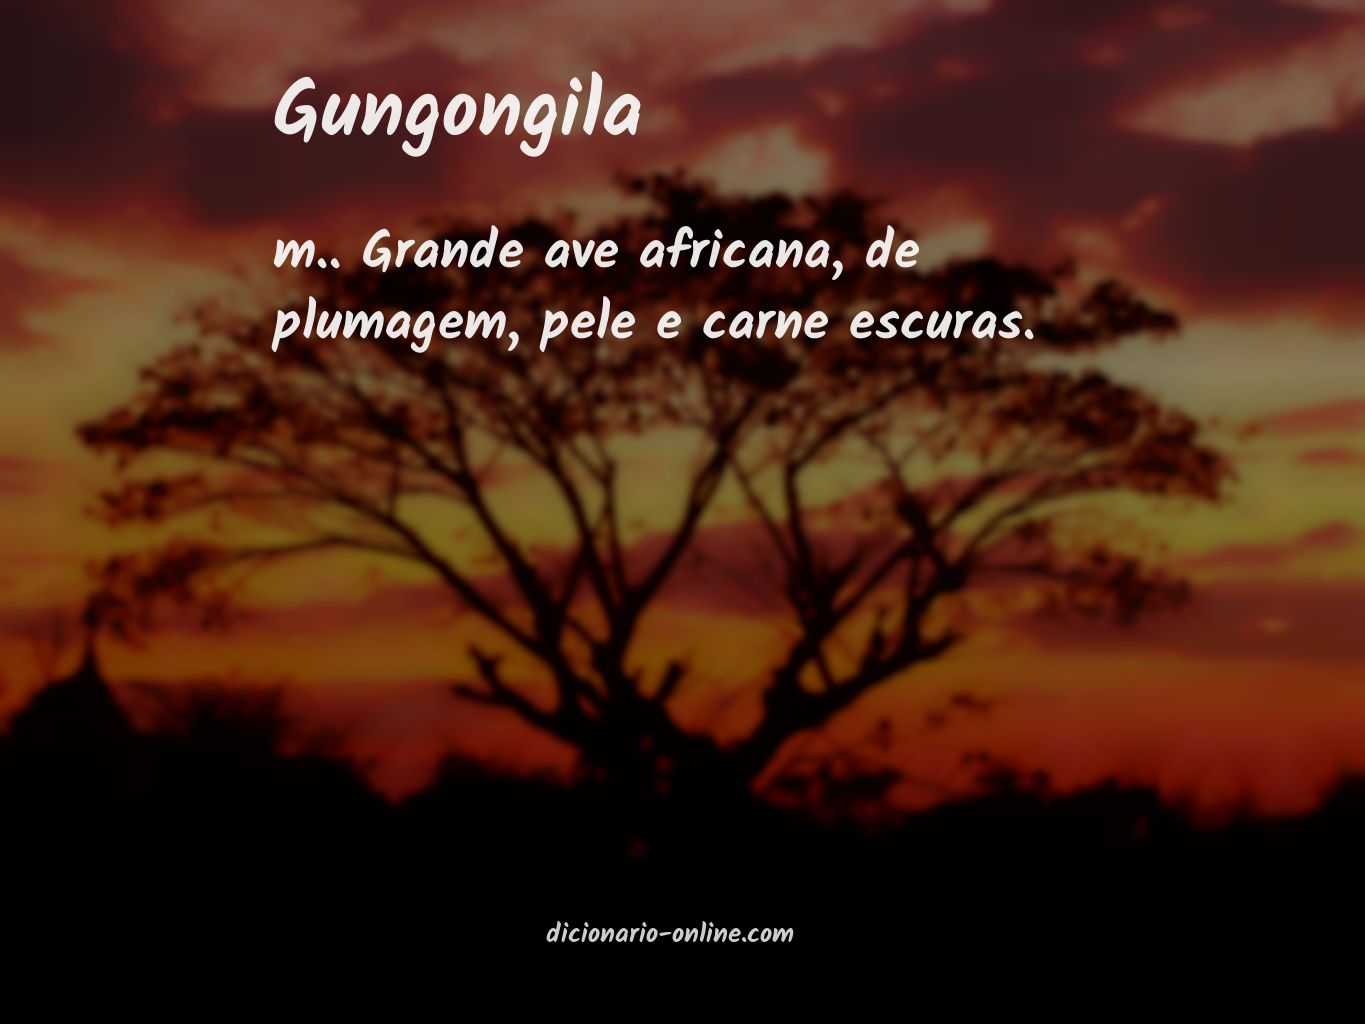 Significado de gungongila